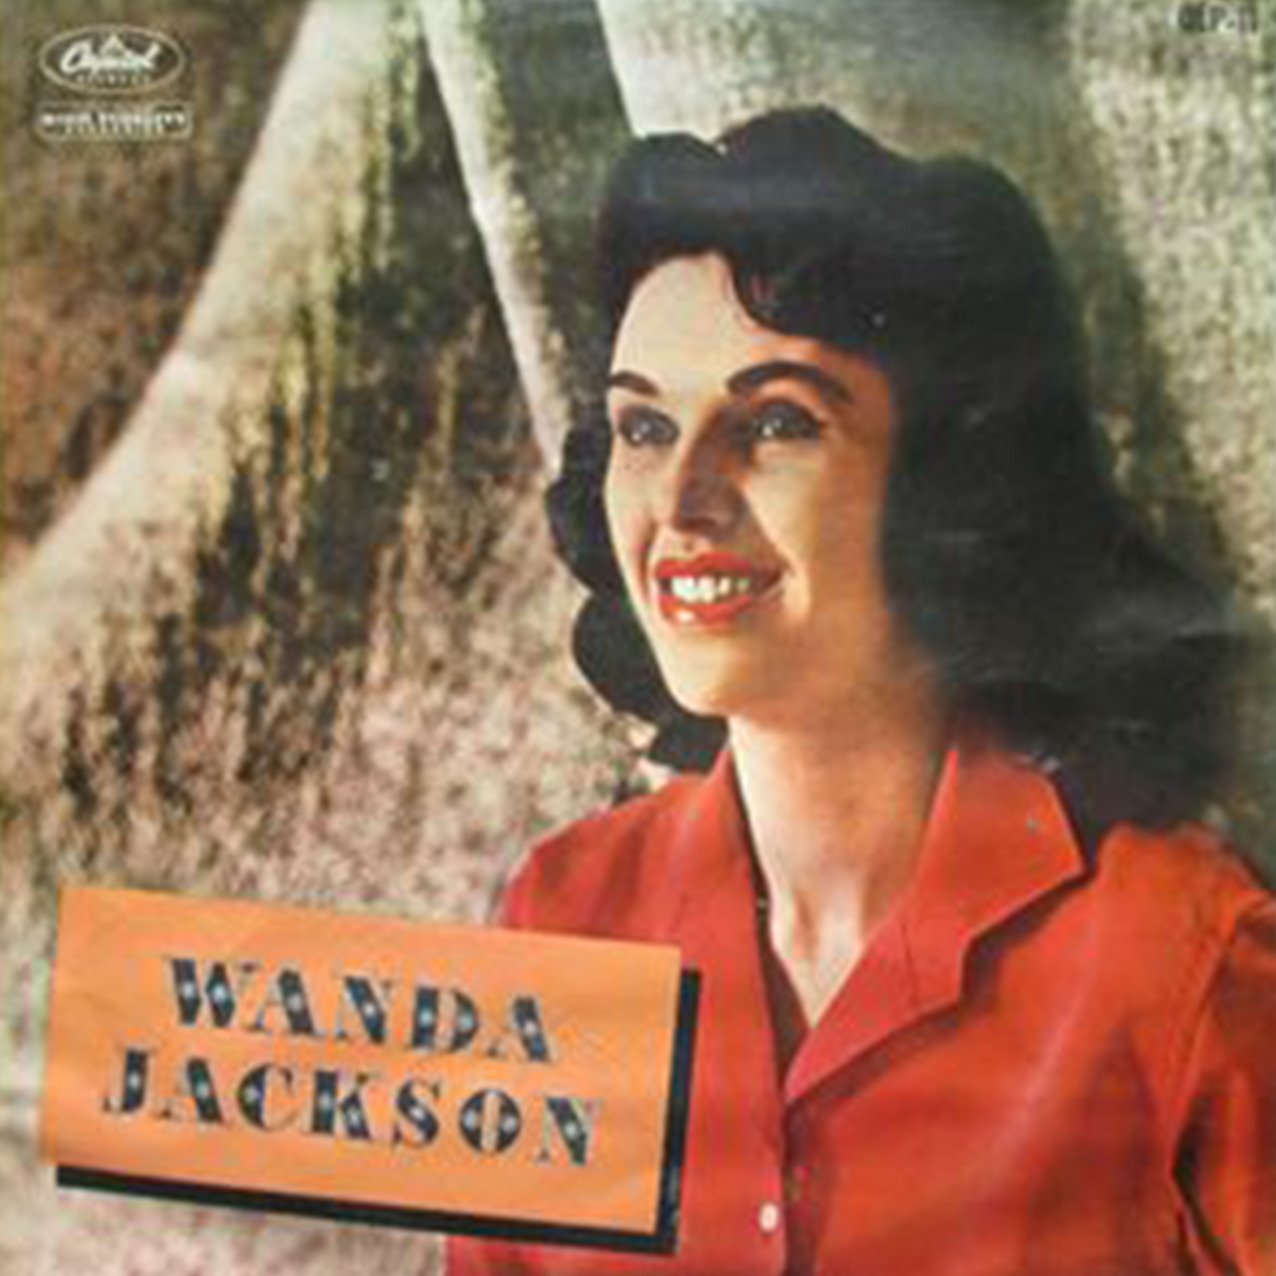 レコード買取専門店「TU-Field」では、ワンダ・ジャクソン『ロックの女王』のレコードを高価買取しております